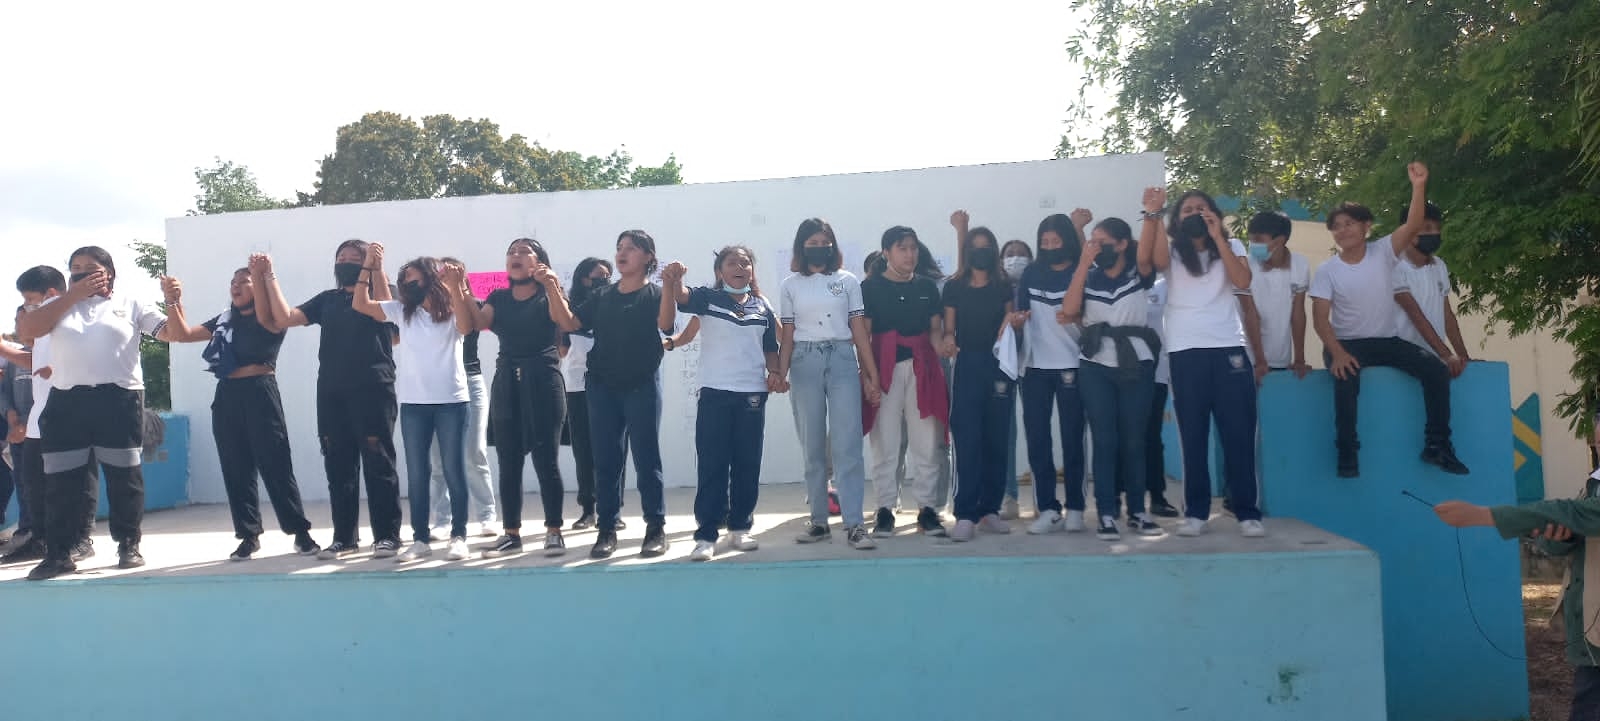 Las y los estudiantes de la secundaria 'José Antonio Tzuc Esparza' en Playa del Carmen exigieron castigo para el docente por presuntamente haber abusado sexualmente de una alumna